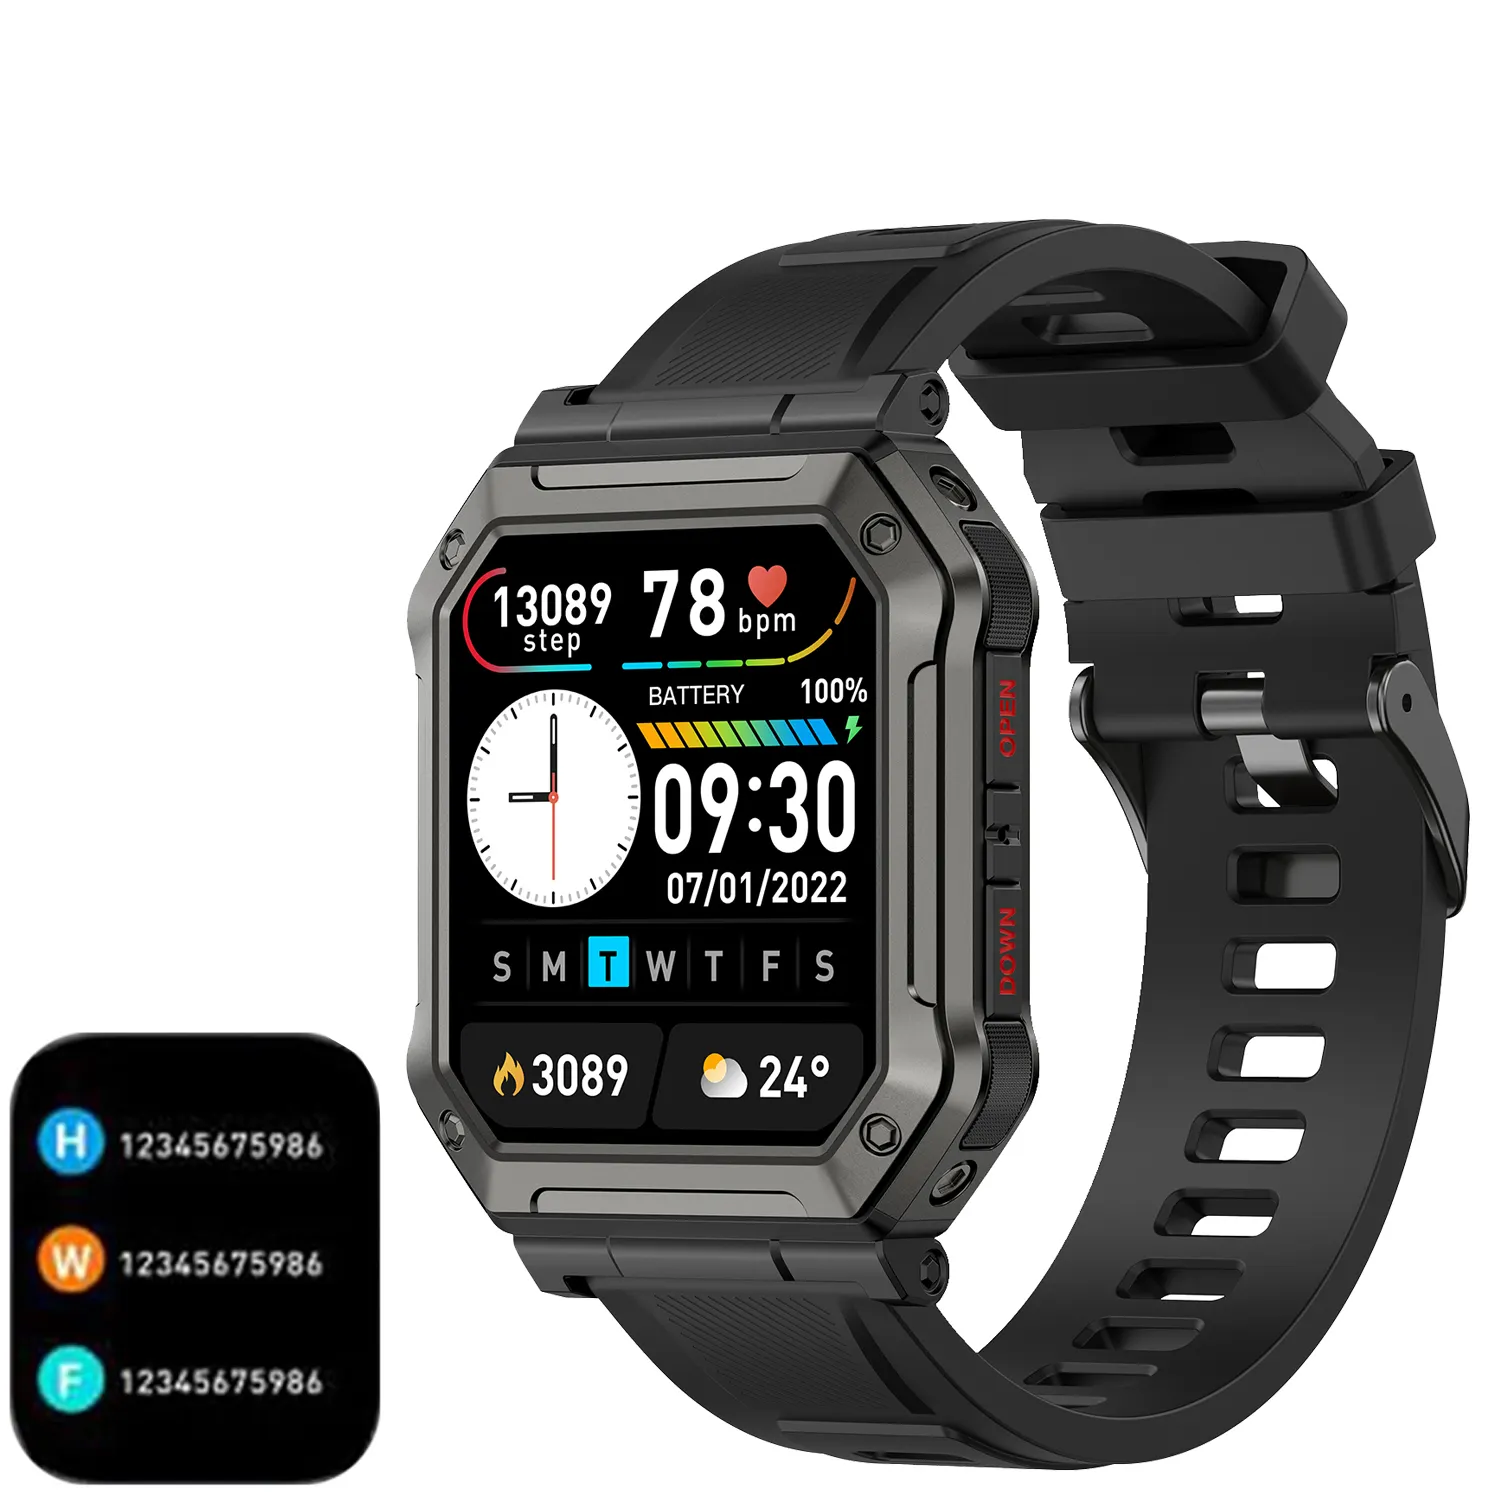 2 In 1 cinturino In Silicone sportivo Ocean Watch band custodia protettiva per Apple Smart Watch band accessori